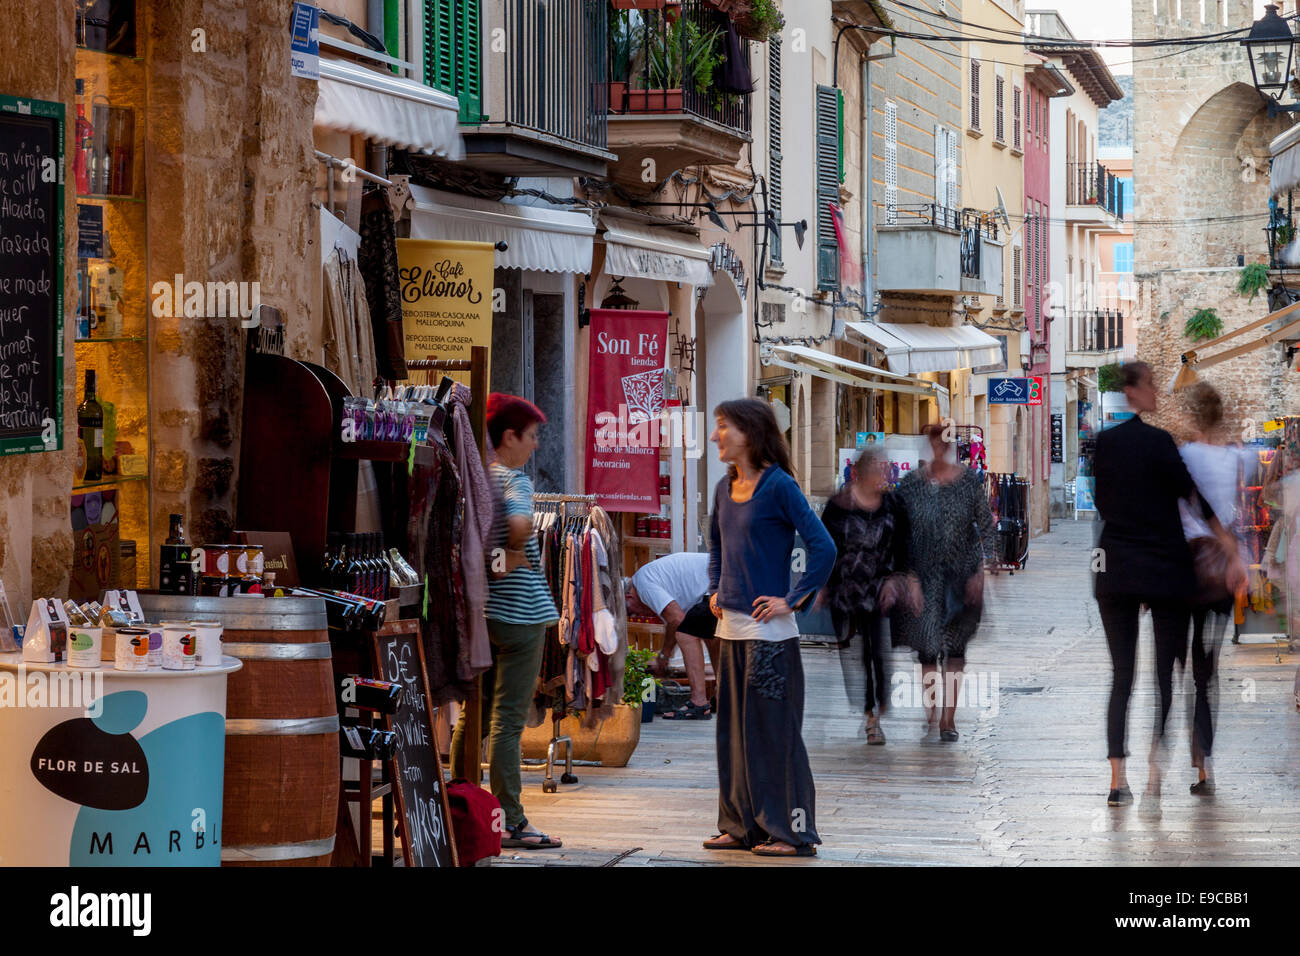 Geschäfte In der Altstadt von Alcudia, Mallorca - Spanien Stockfoto